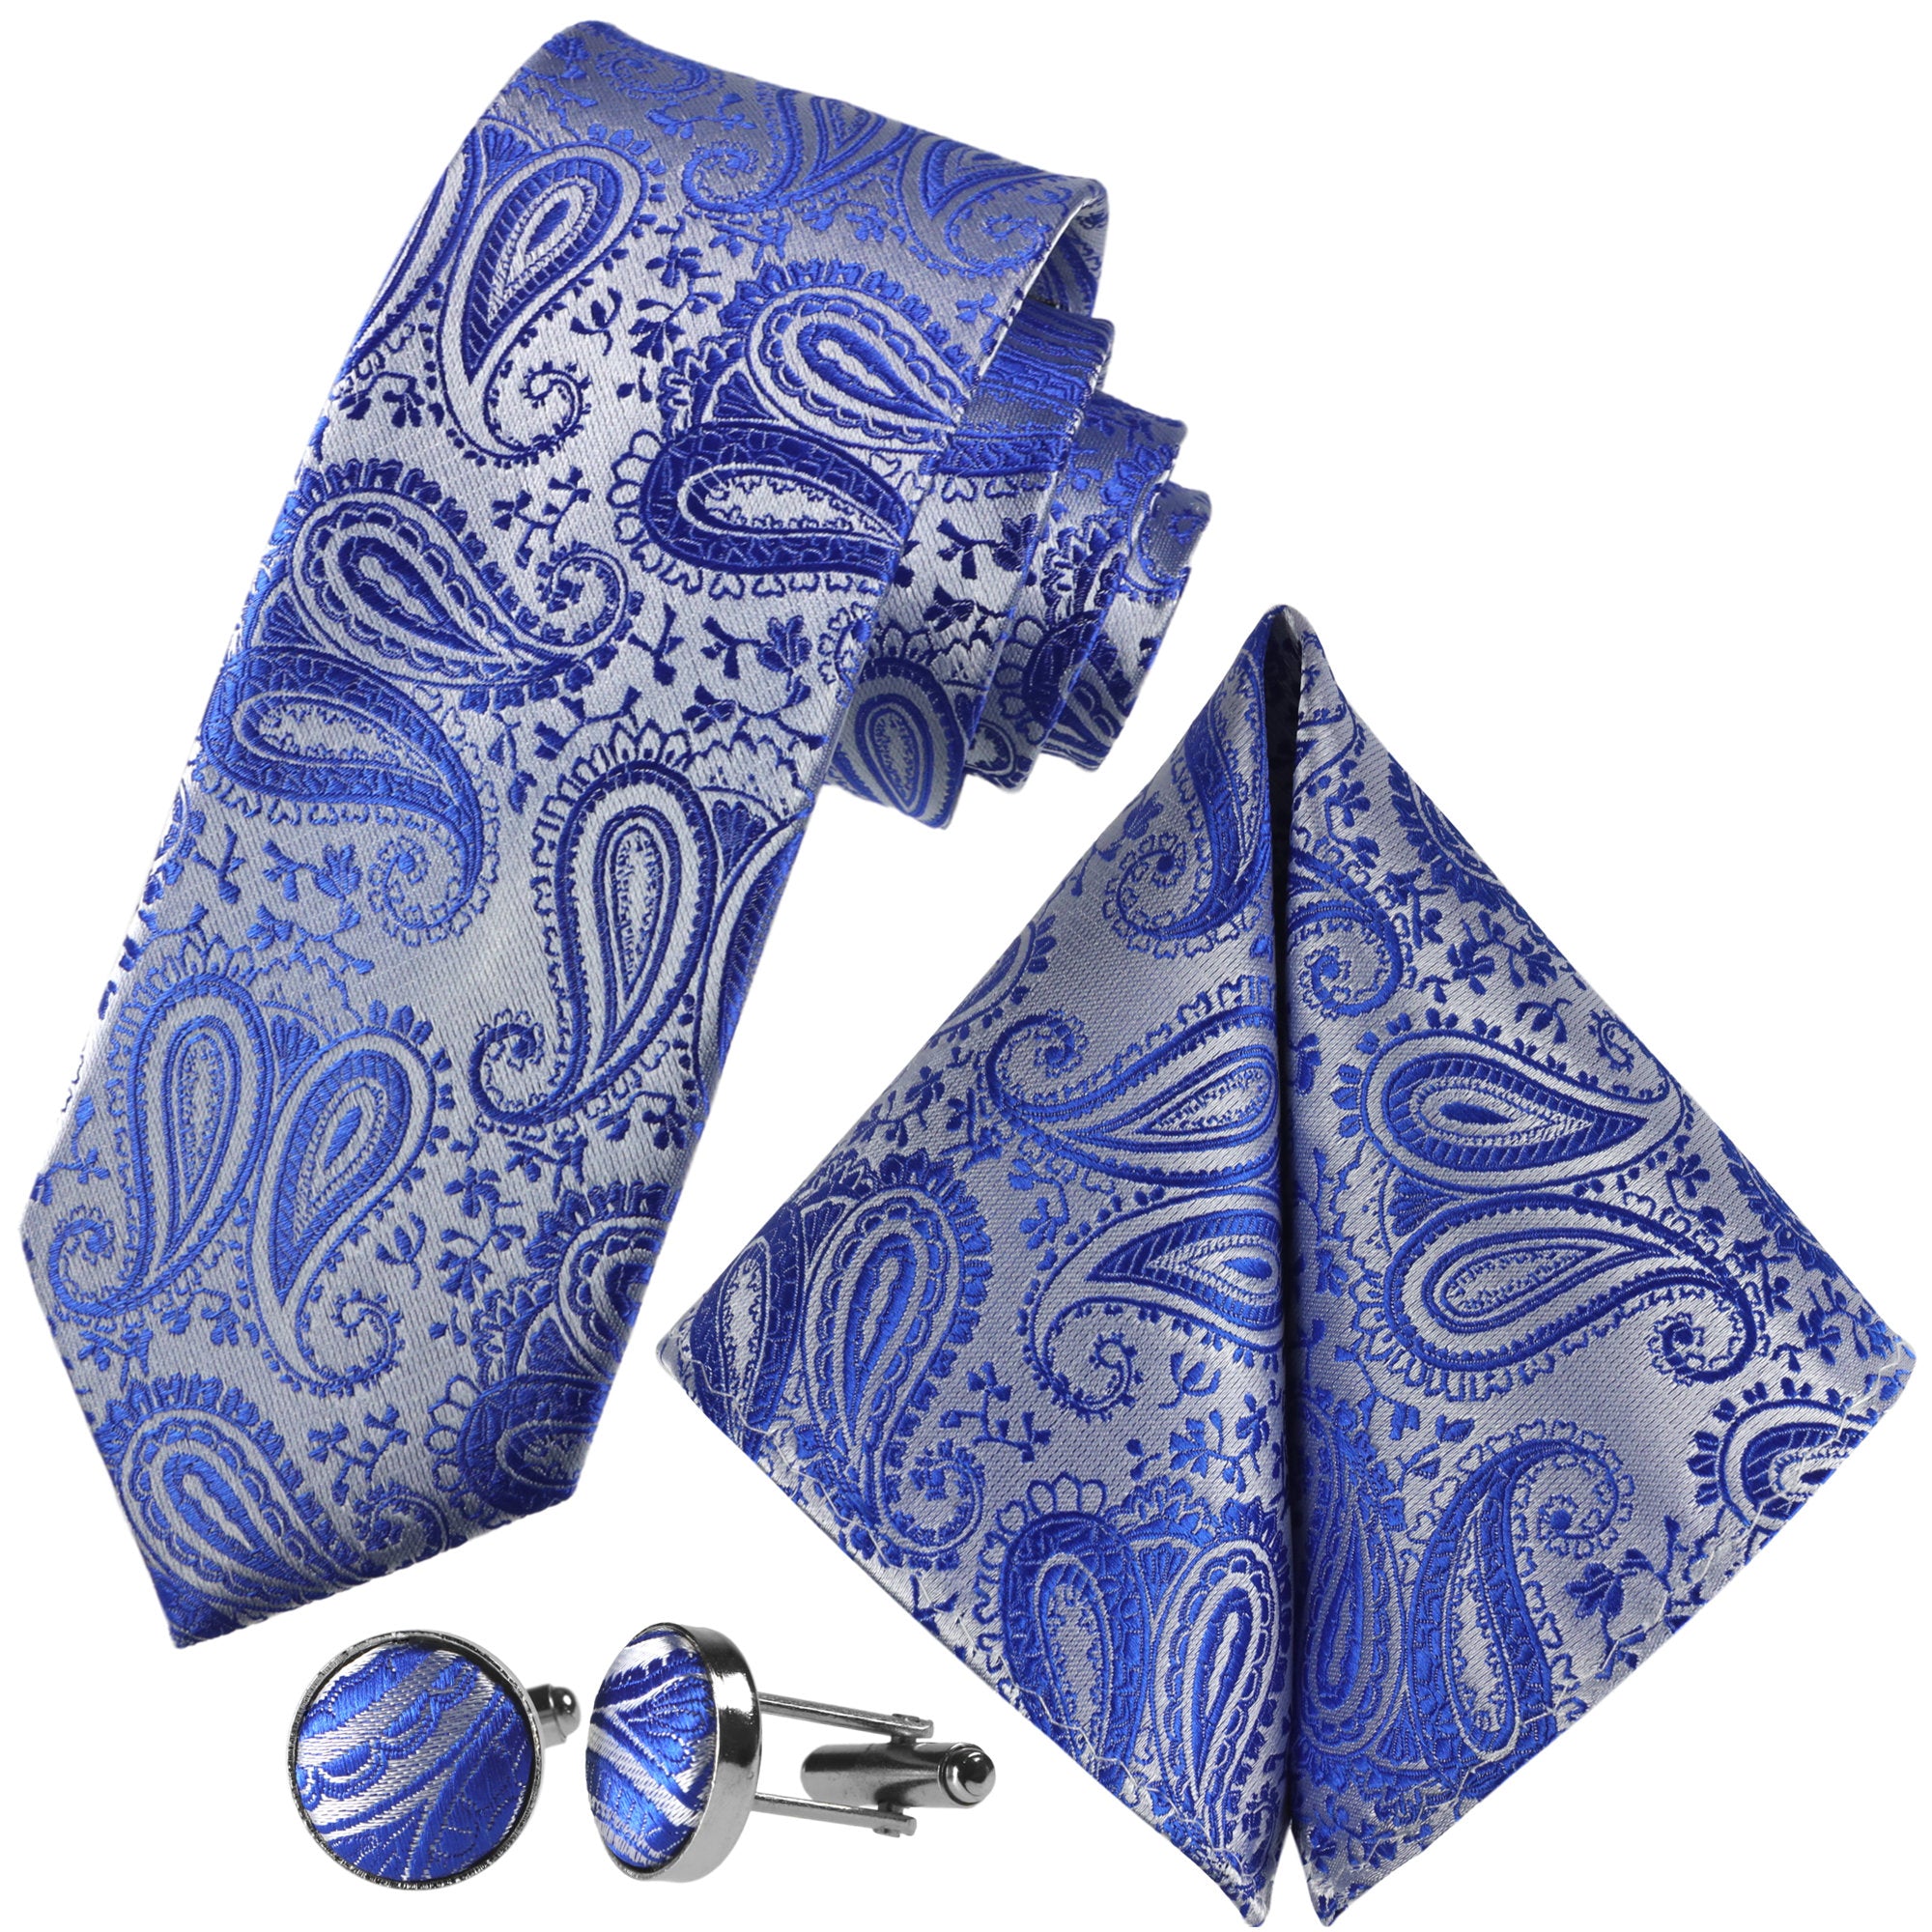 Kaufen Sie Silber-Blaue Paisley-Krawatte | GASSANI designt - GASSANIshop.de für Krawatten